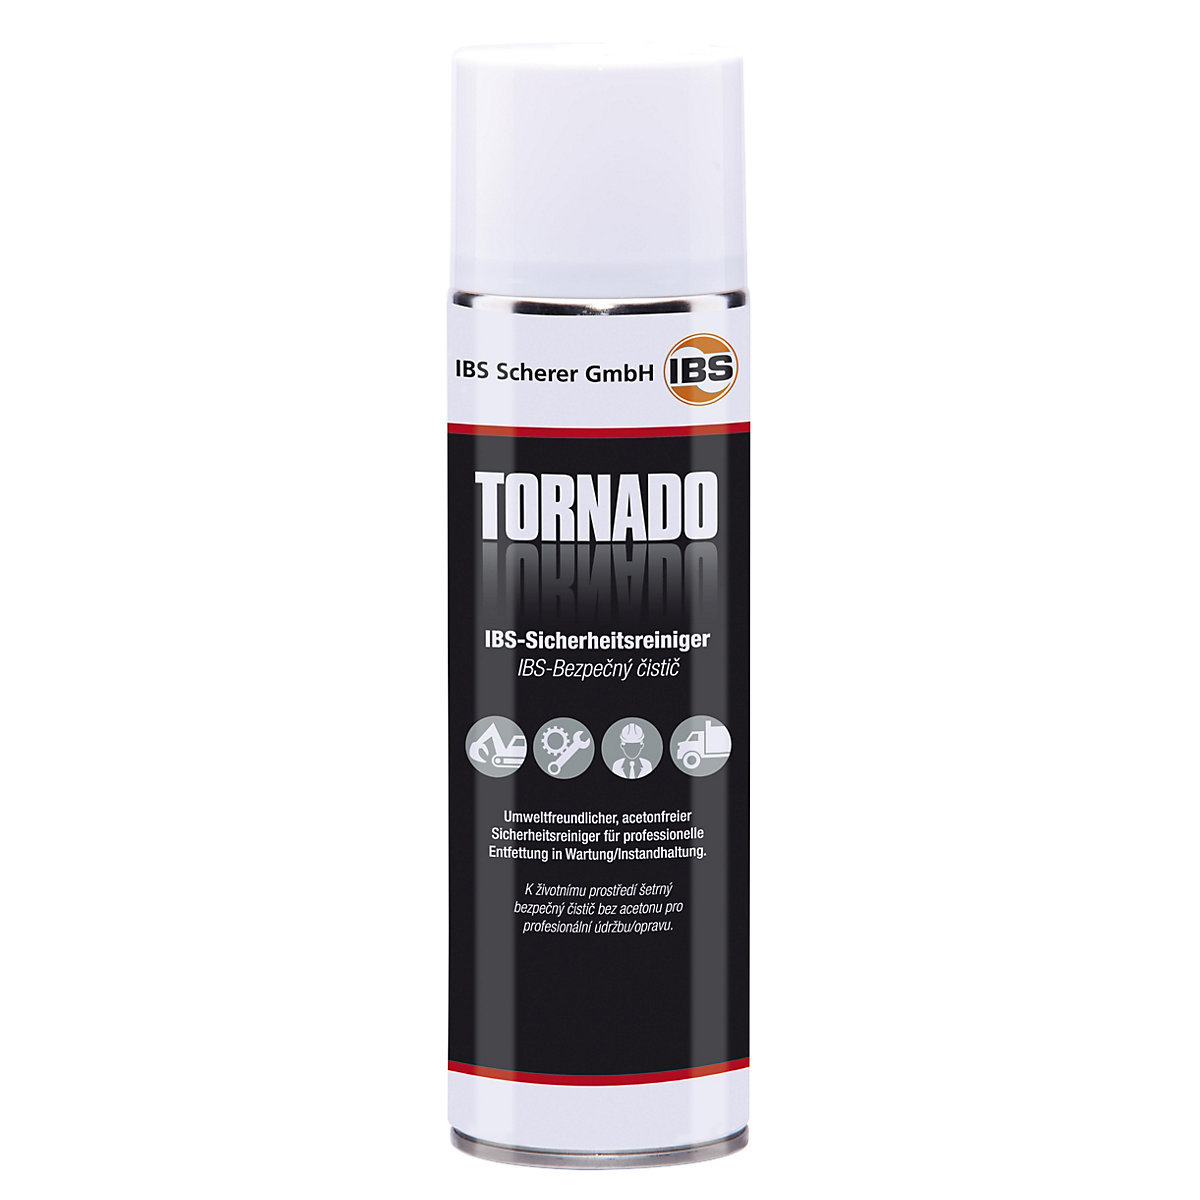 TORNADO safety cleaner - IBS Scherer